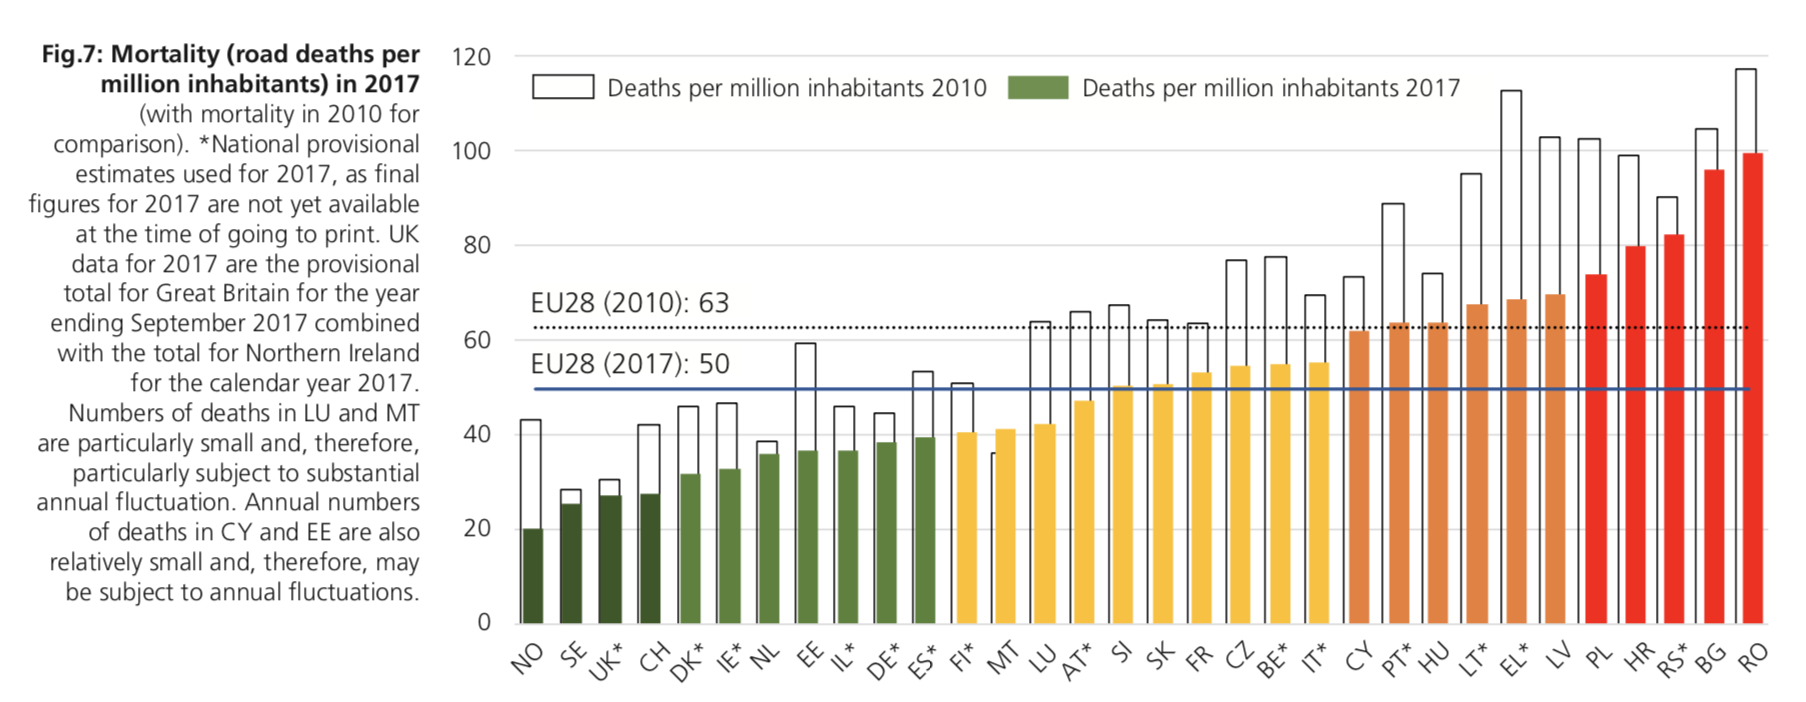 Liczba ofiar wypadków na milion mieszkańców w 2017 r. Źródło: Raport ETSC 